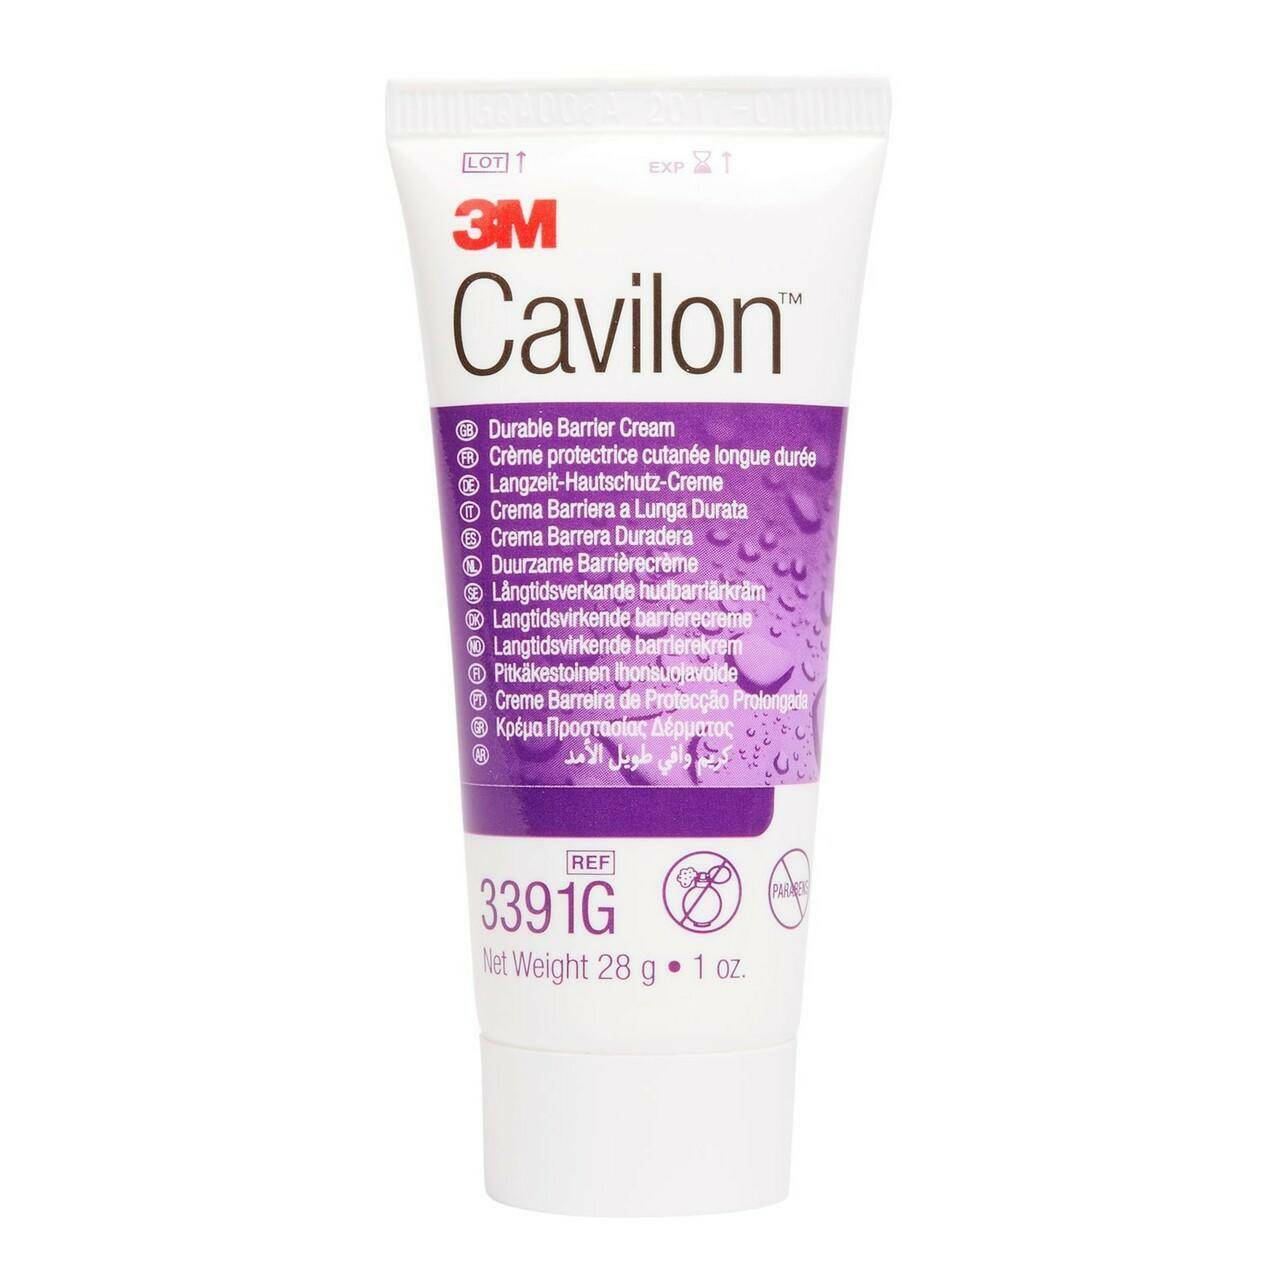 Cavilon Durable Barrier Cream - 28g - UKMEDI